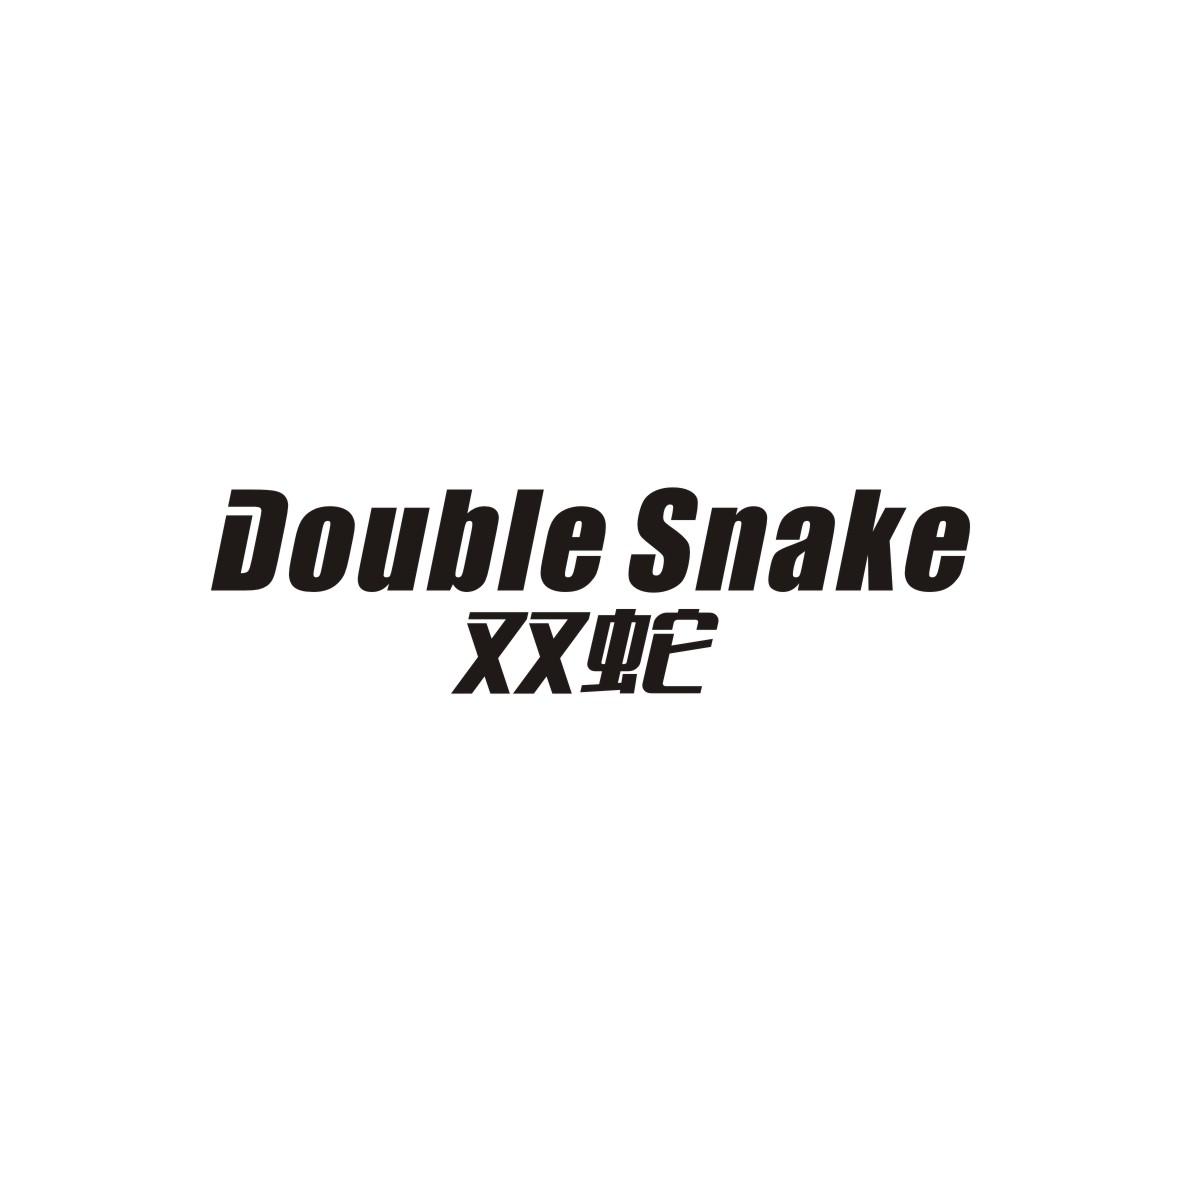 双蛇
Double Snake分线盒商标转让费用买卖交易流程